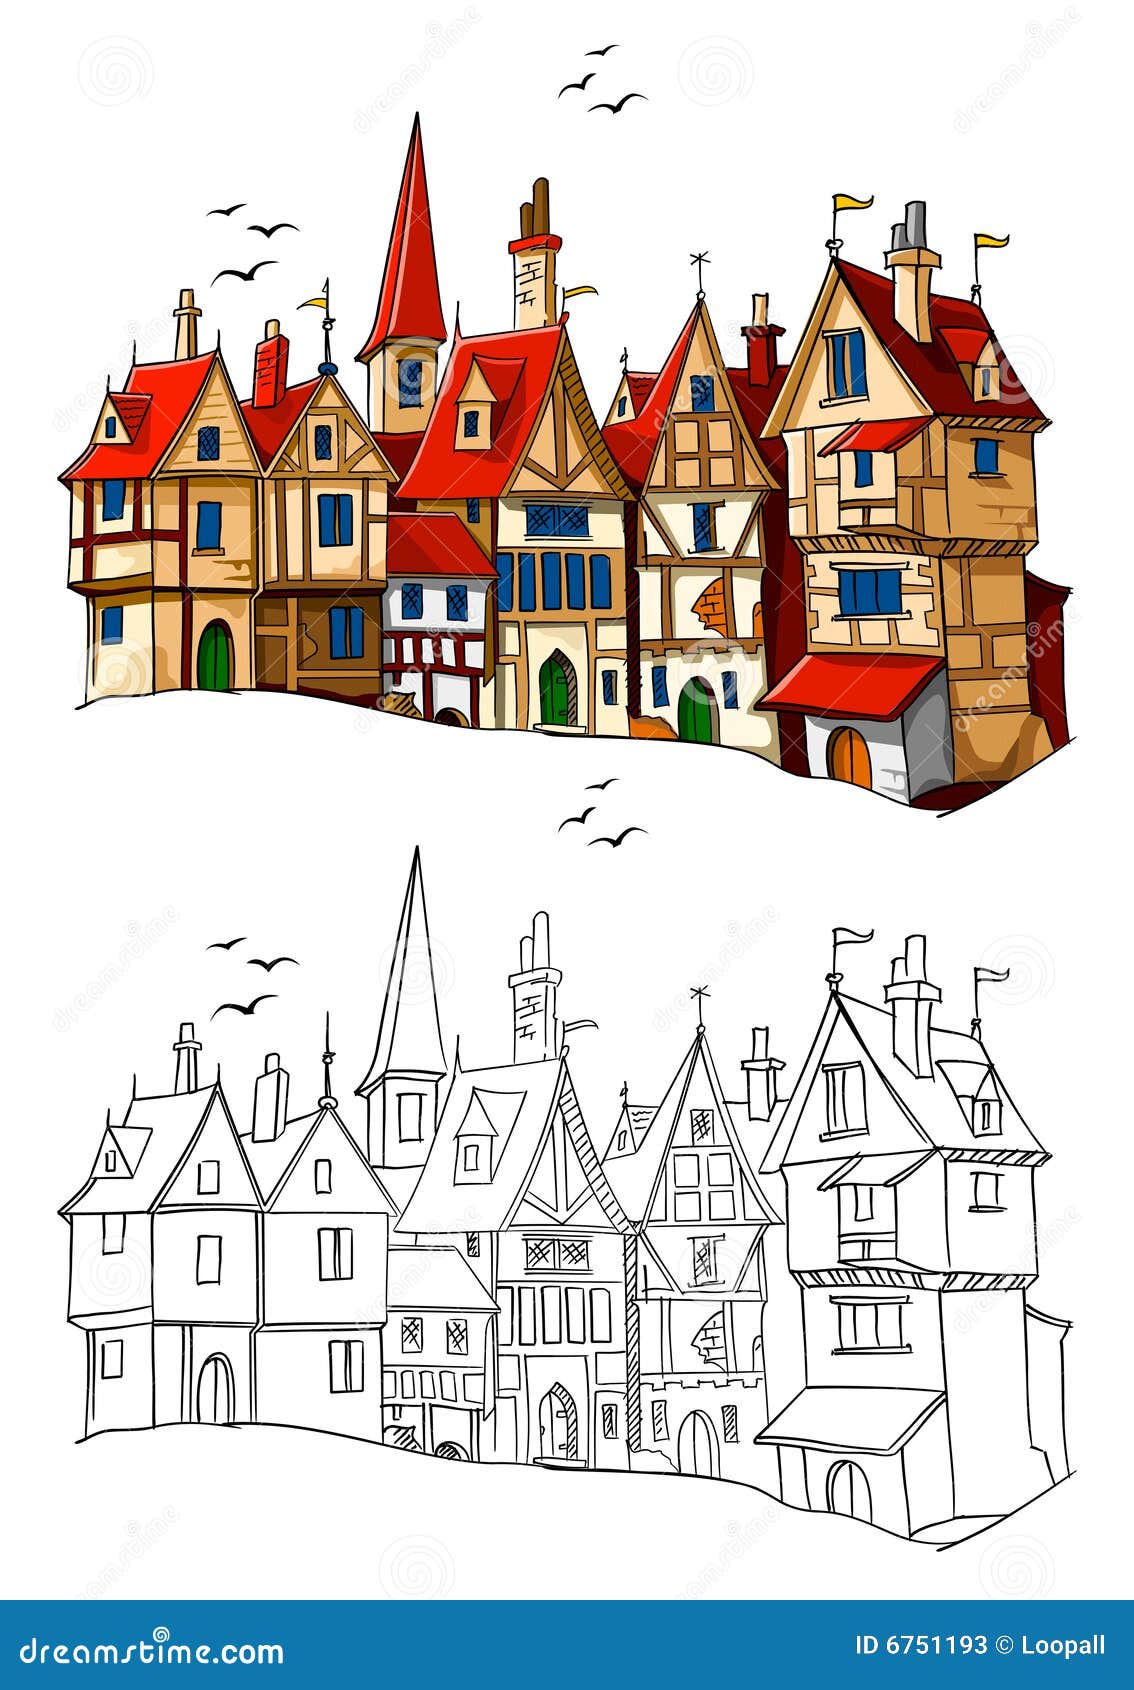 Miasteczko europejski ilustracyjny stary wektor. Architektury europejski ilustracyjny stary miasteczka wektor